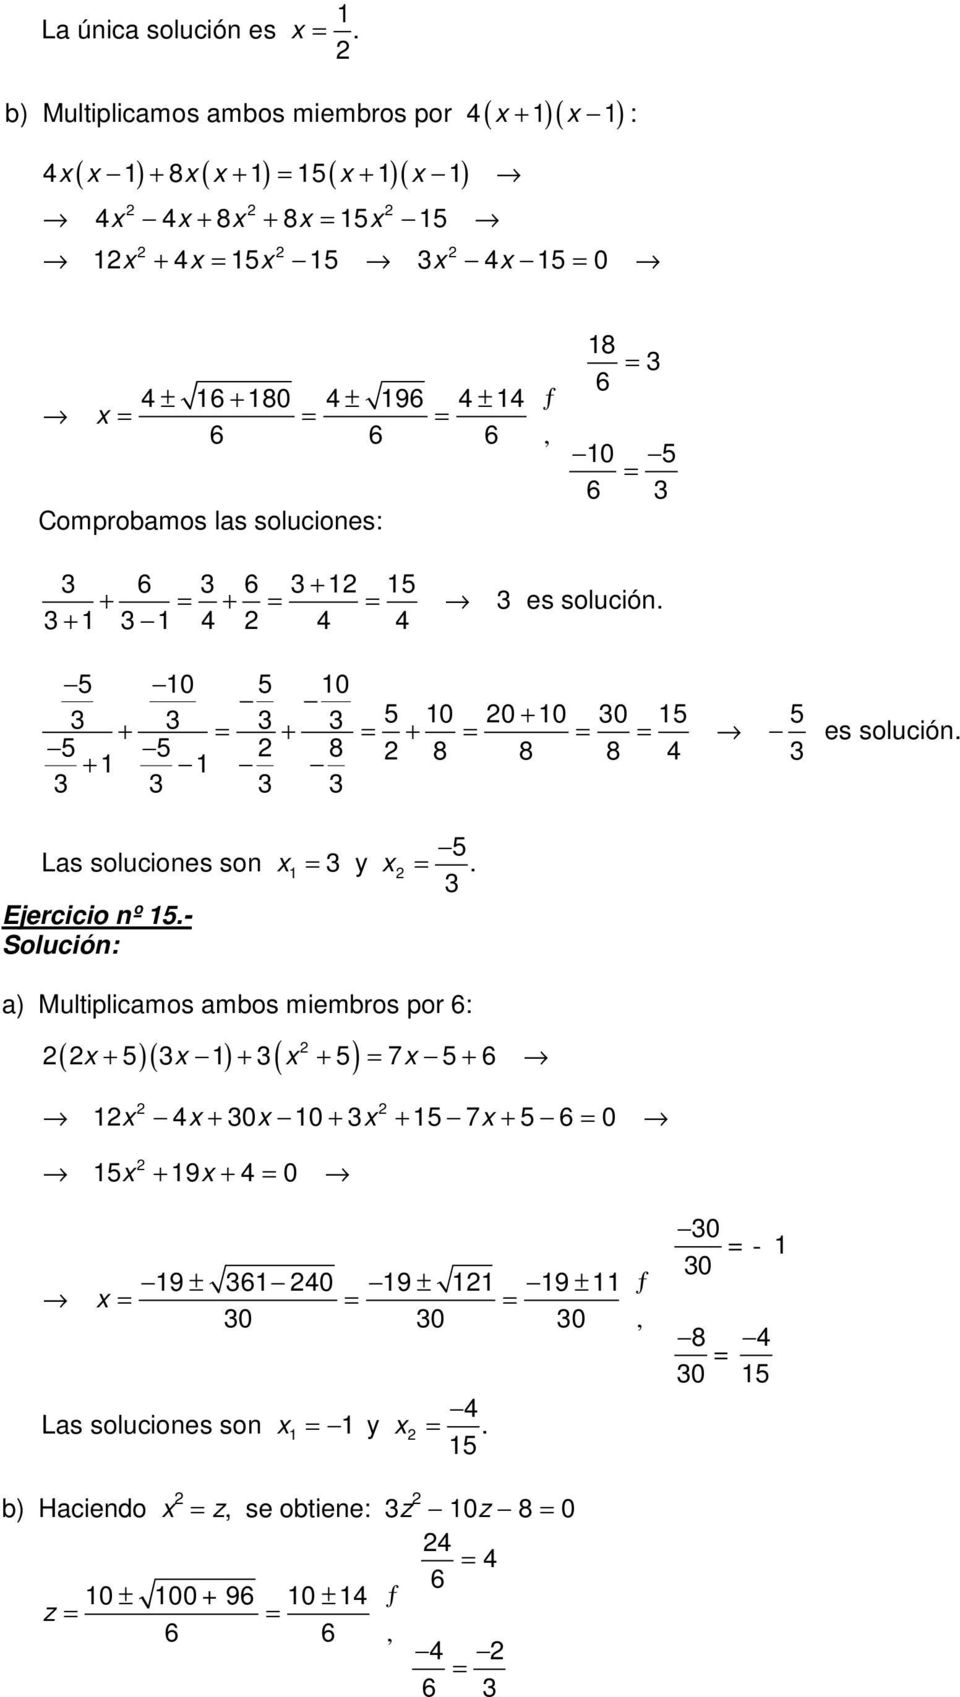 las soluciones: 8 6 0 5 6 6 6 + 5 + + + es solución. 5 0 5 0 + + + 5 0 0 0 0 5 5 + 5 5 8 8 8 8 + es solución.